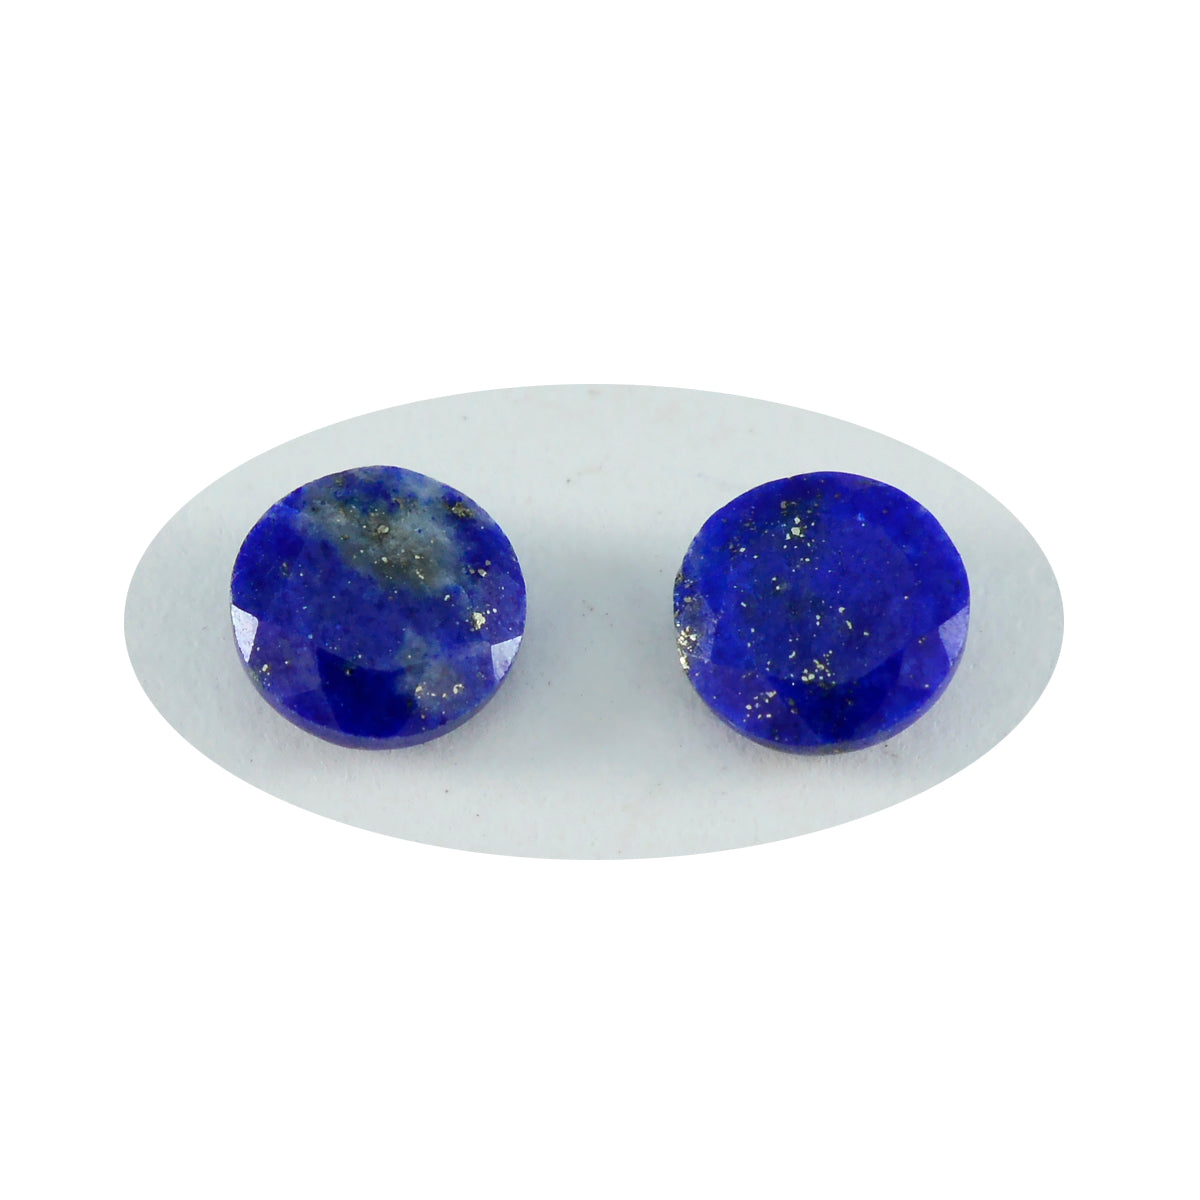 riyogems 1 шт. настоящий синий лазурит граненый 13x13 мм круглый камень хорошего качества